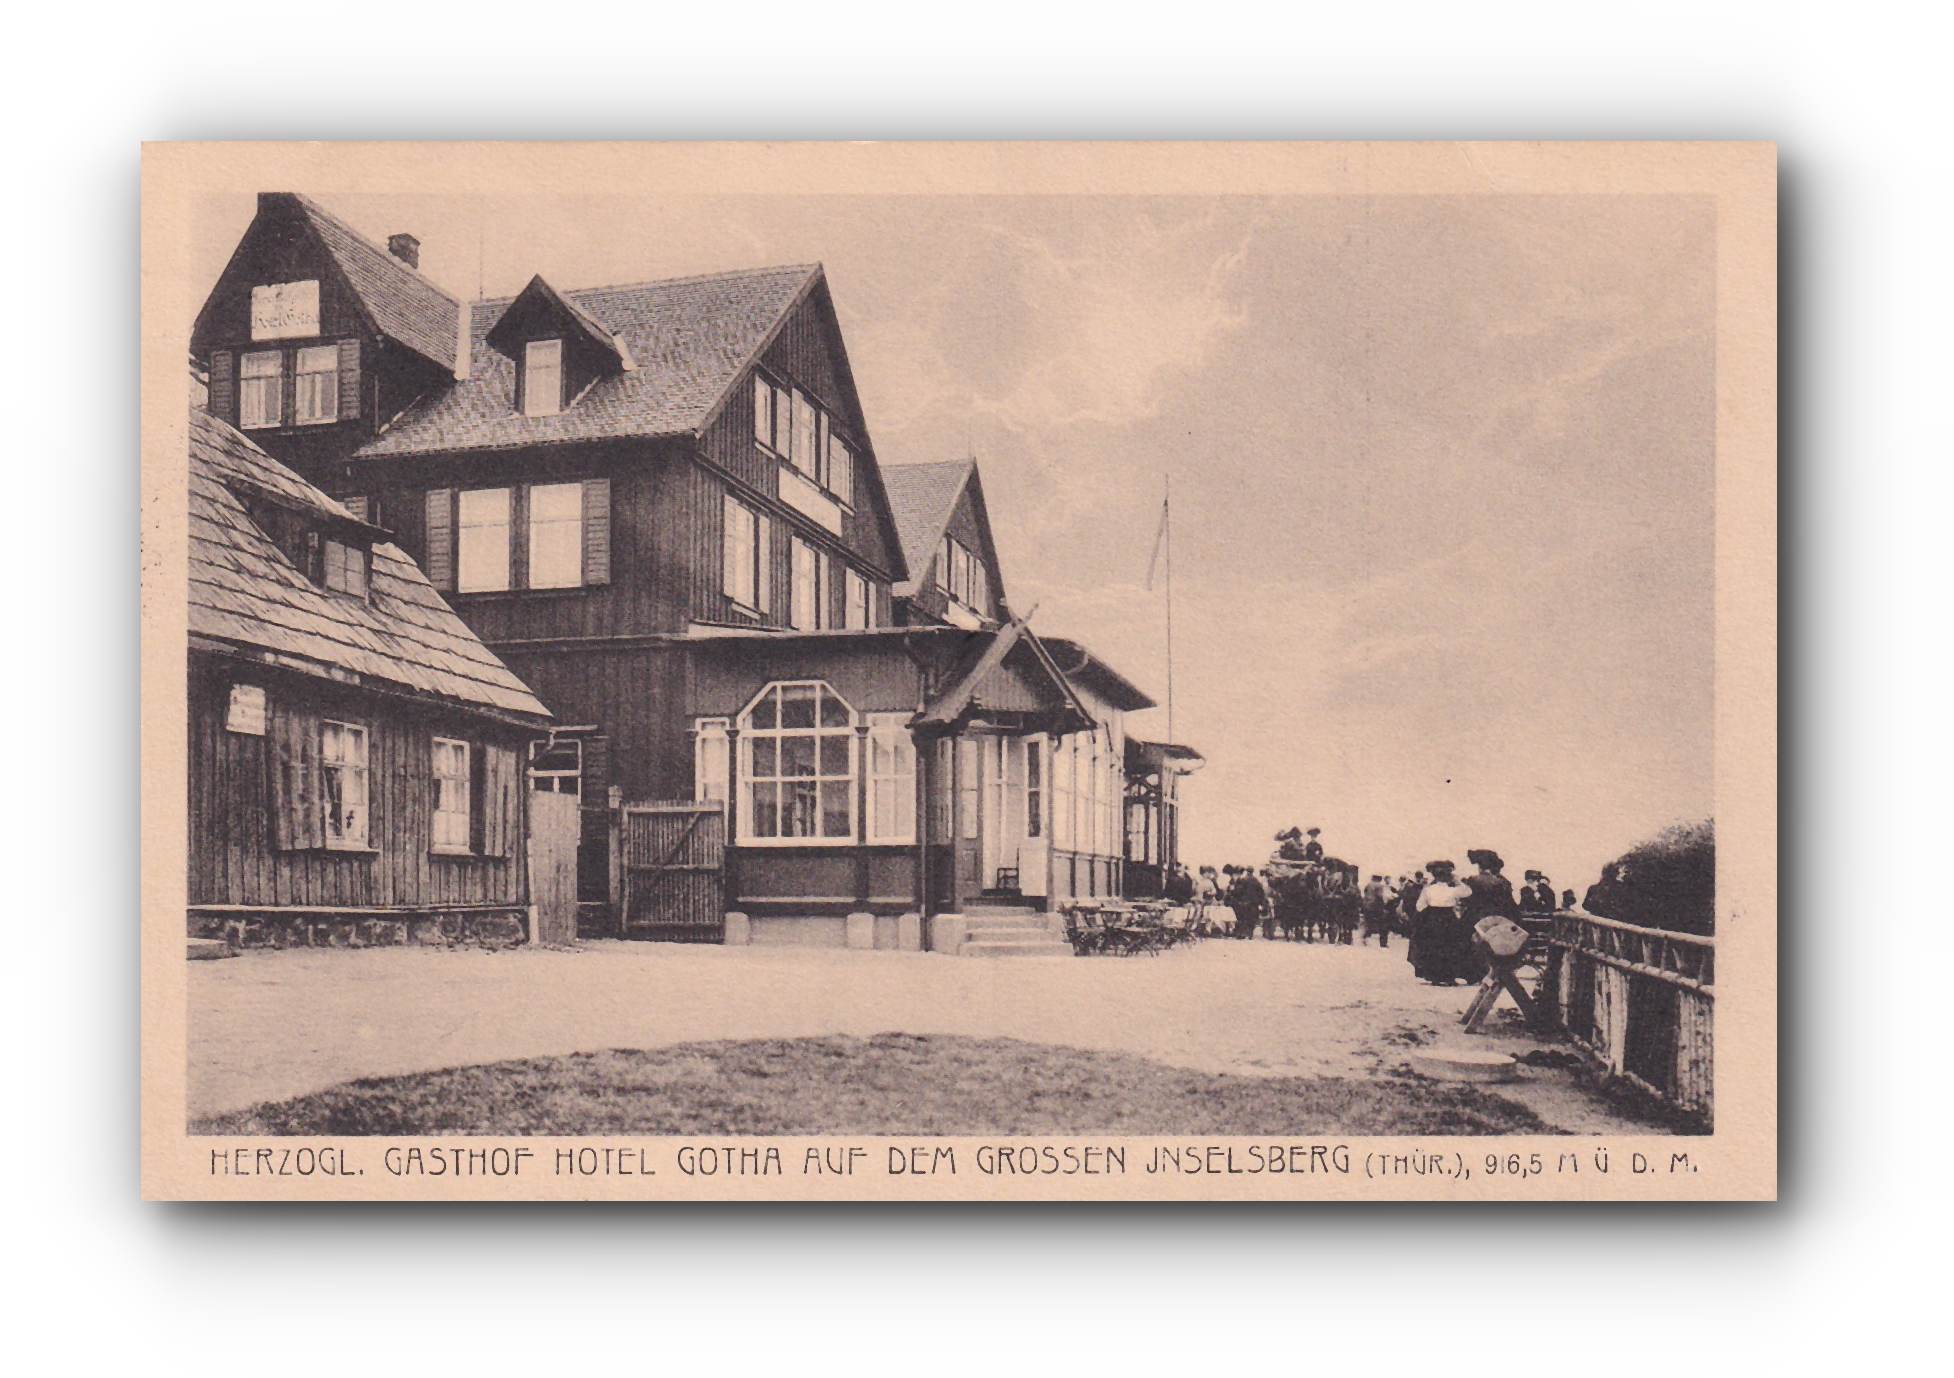 -Herzoglicher Gasthof Hotel Gotha - INSELSBERG - 05.09.1918 -